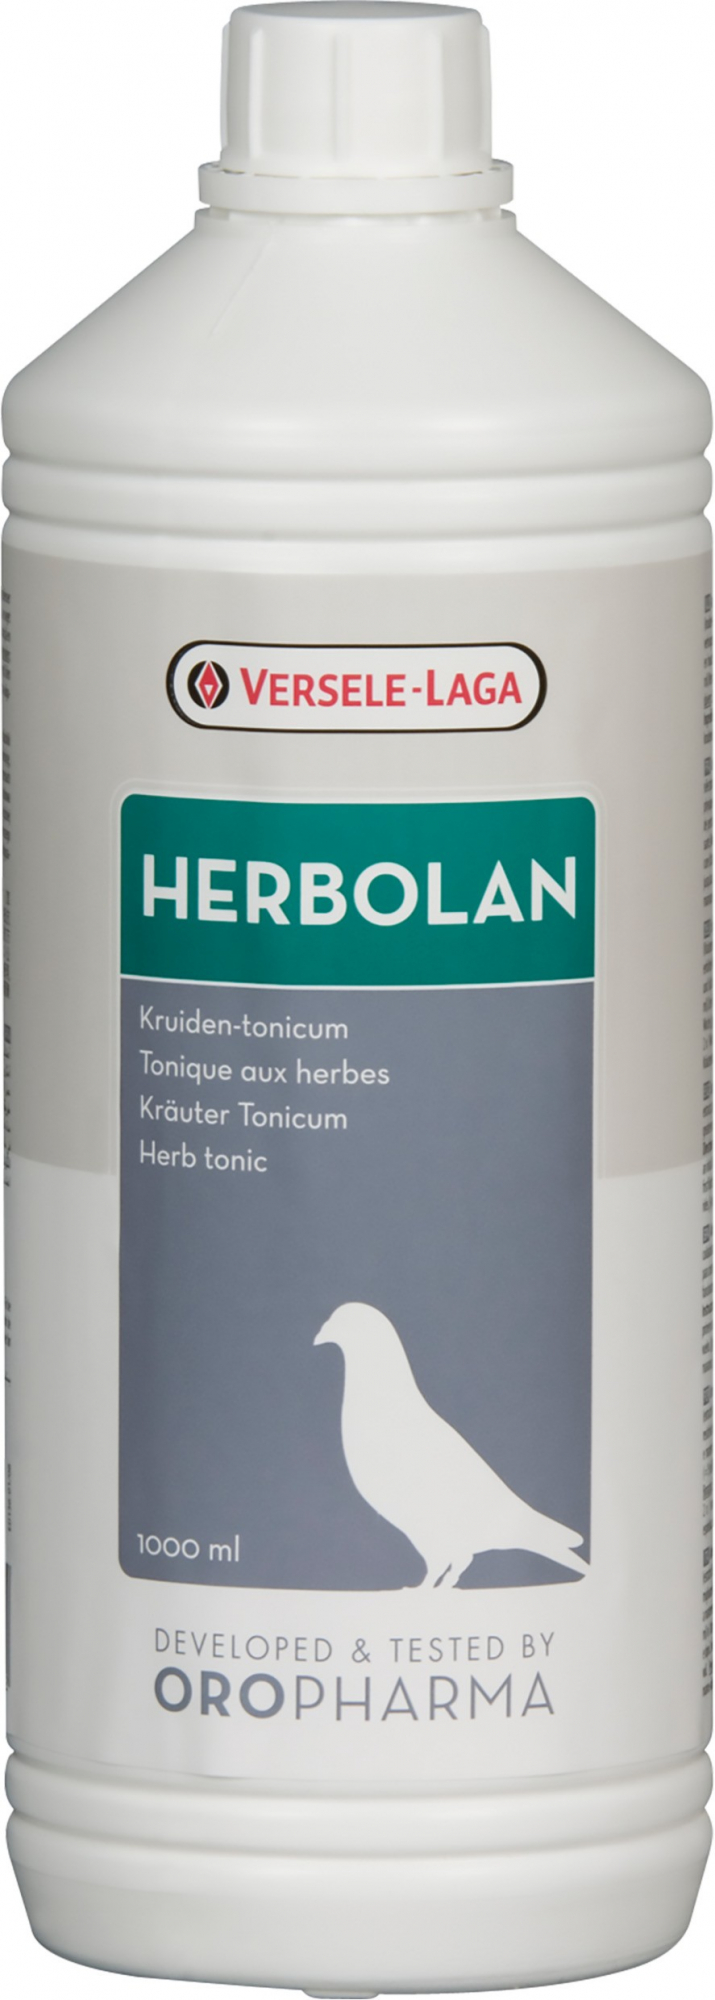 Oropharma Herbolan - Tónico con hierbas - Para una condición física óptima y para aumentar la resistencia y fortaleza. 